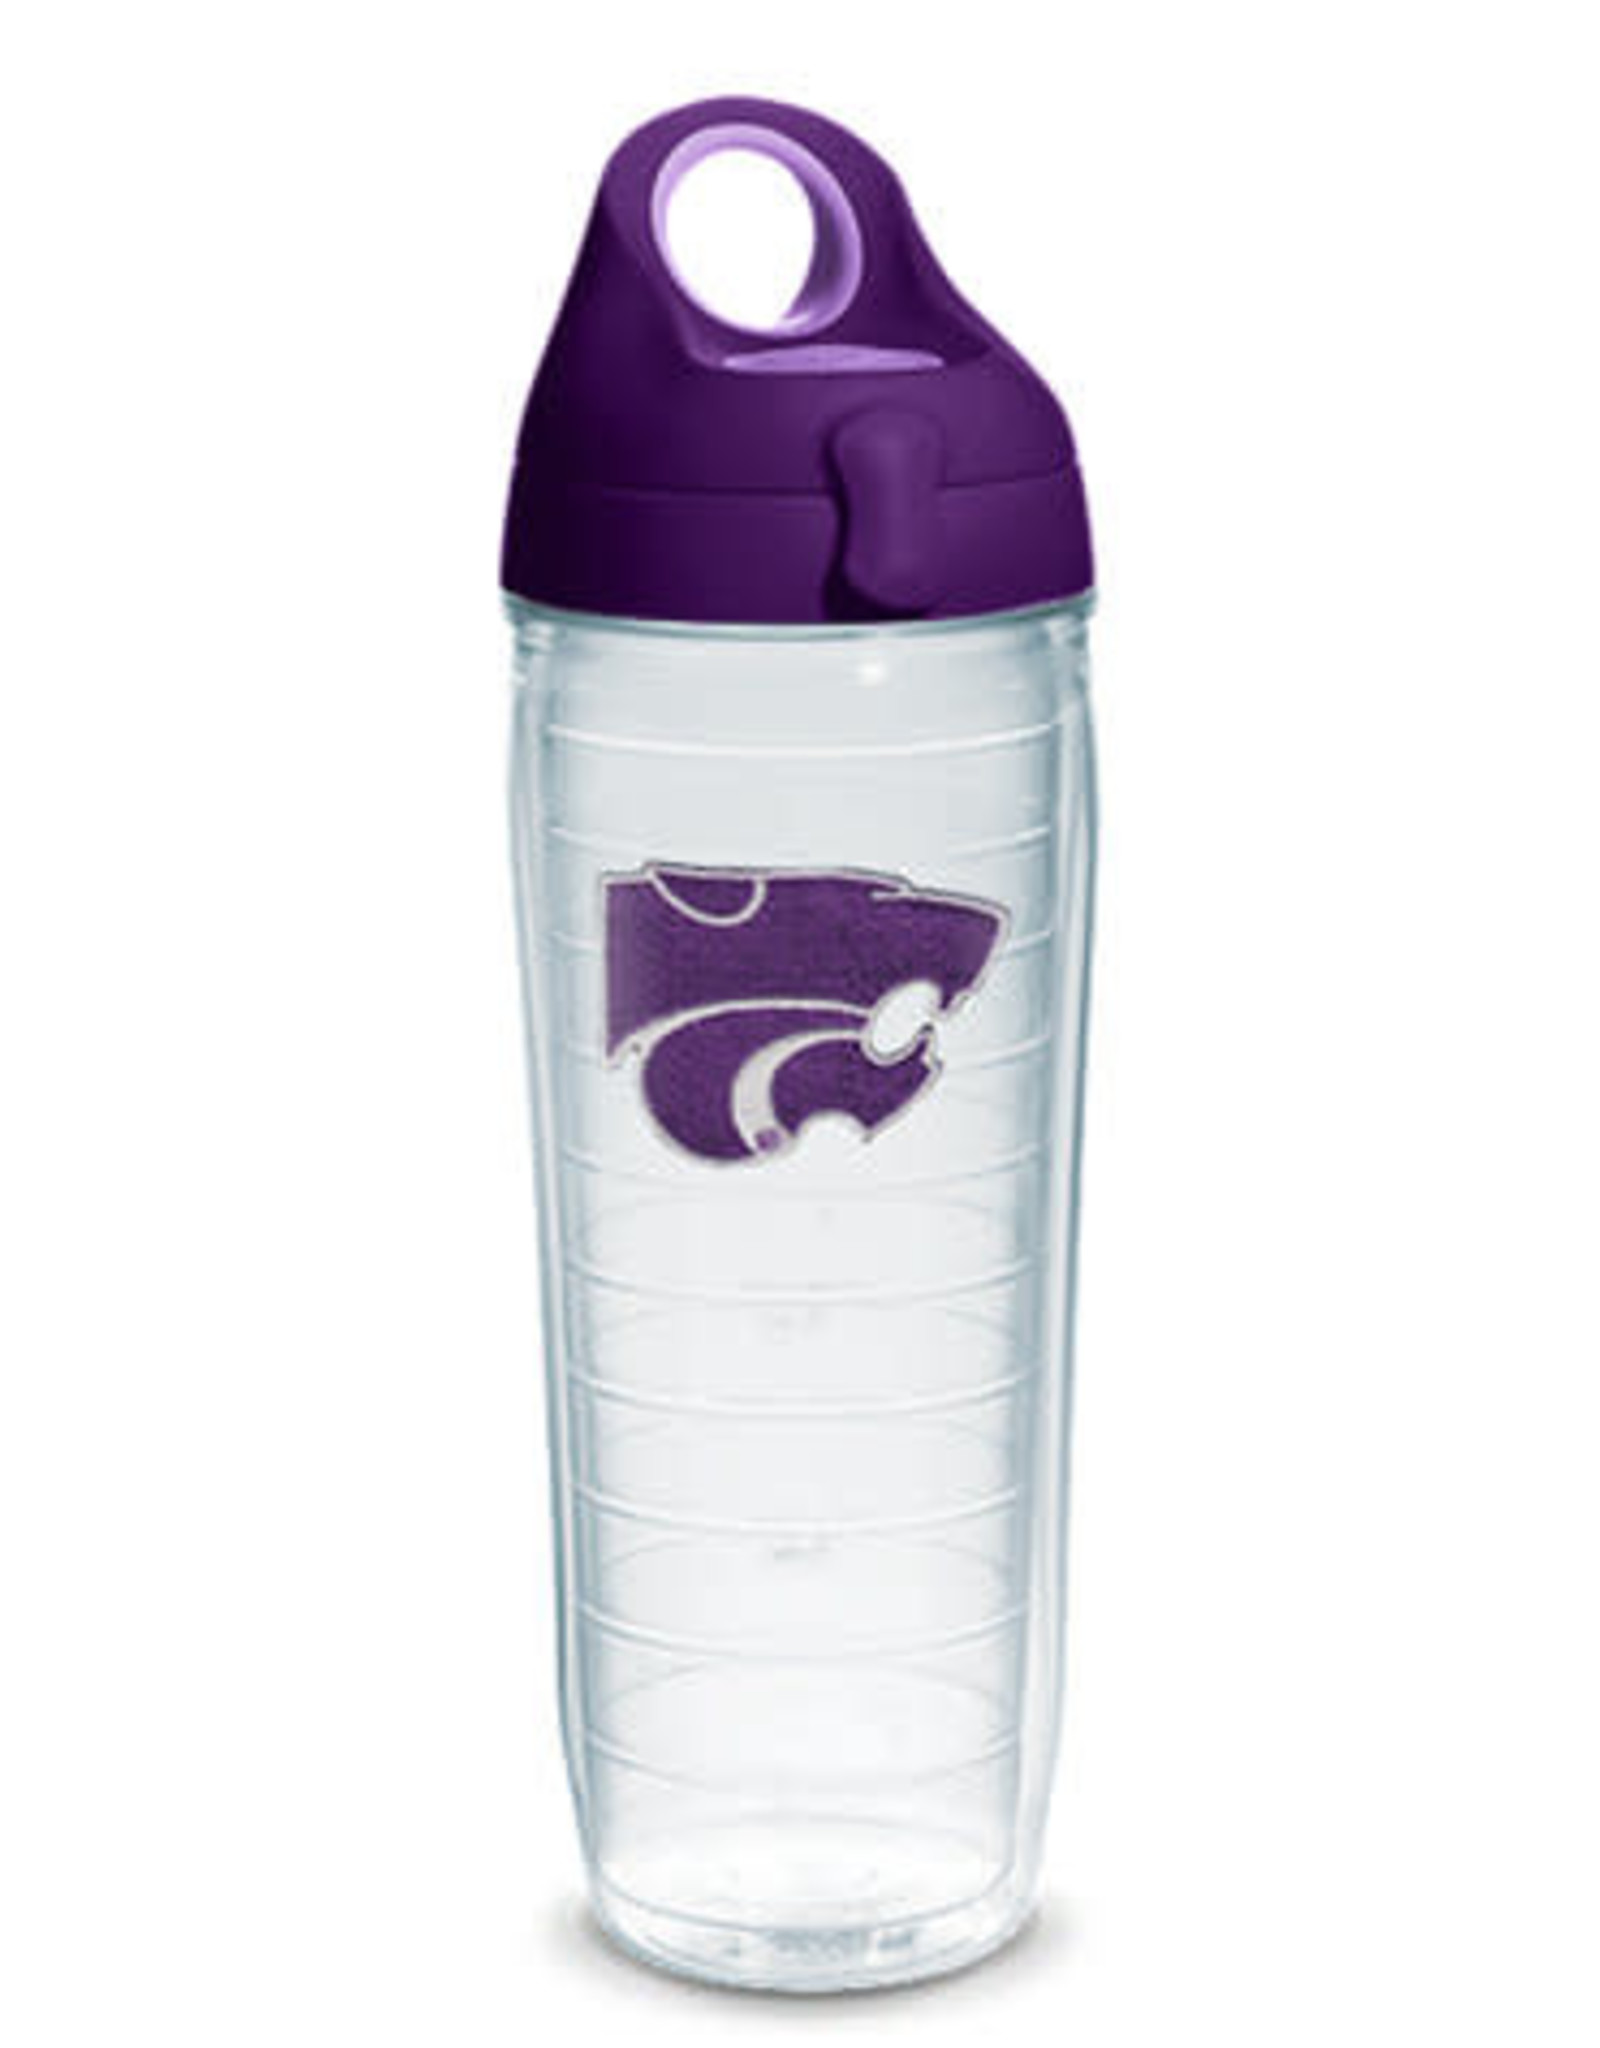 Tervis Tumbler Water Bottle Kansas State